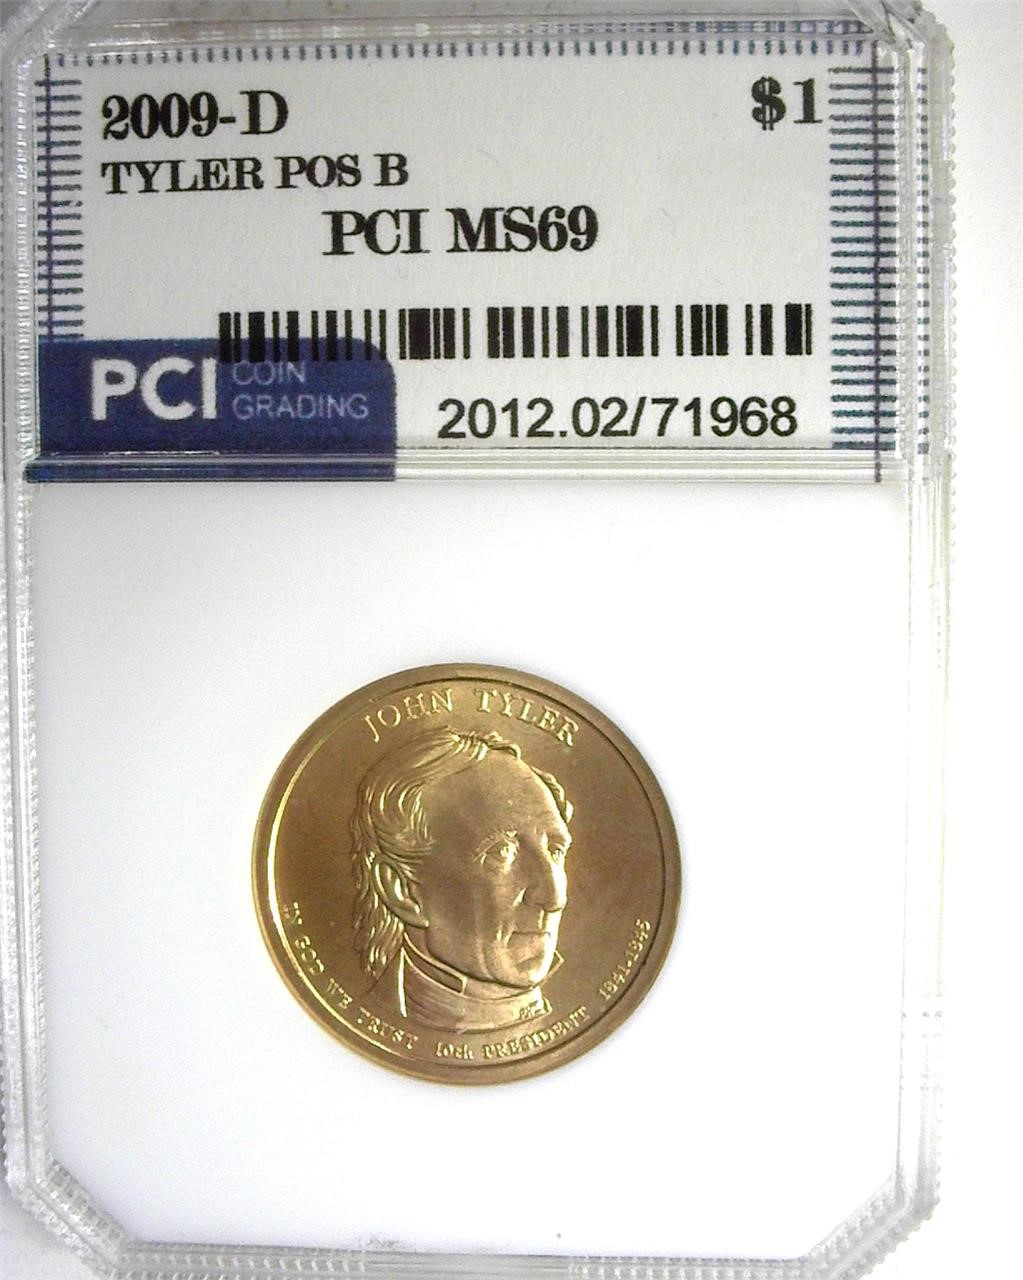 2009-D Tyler $ PCI MS69 Position B